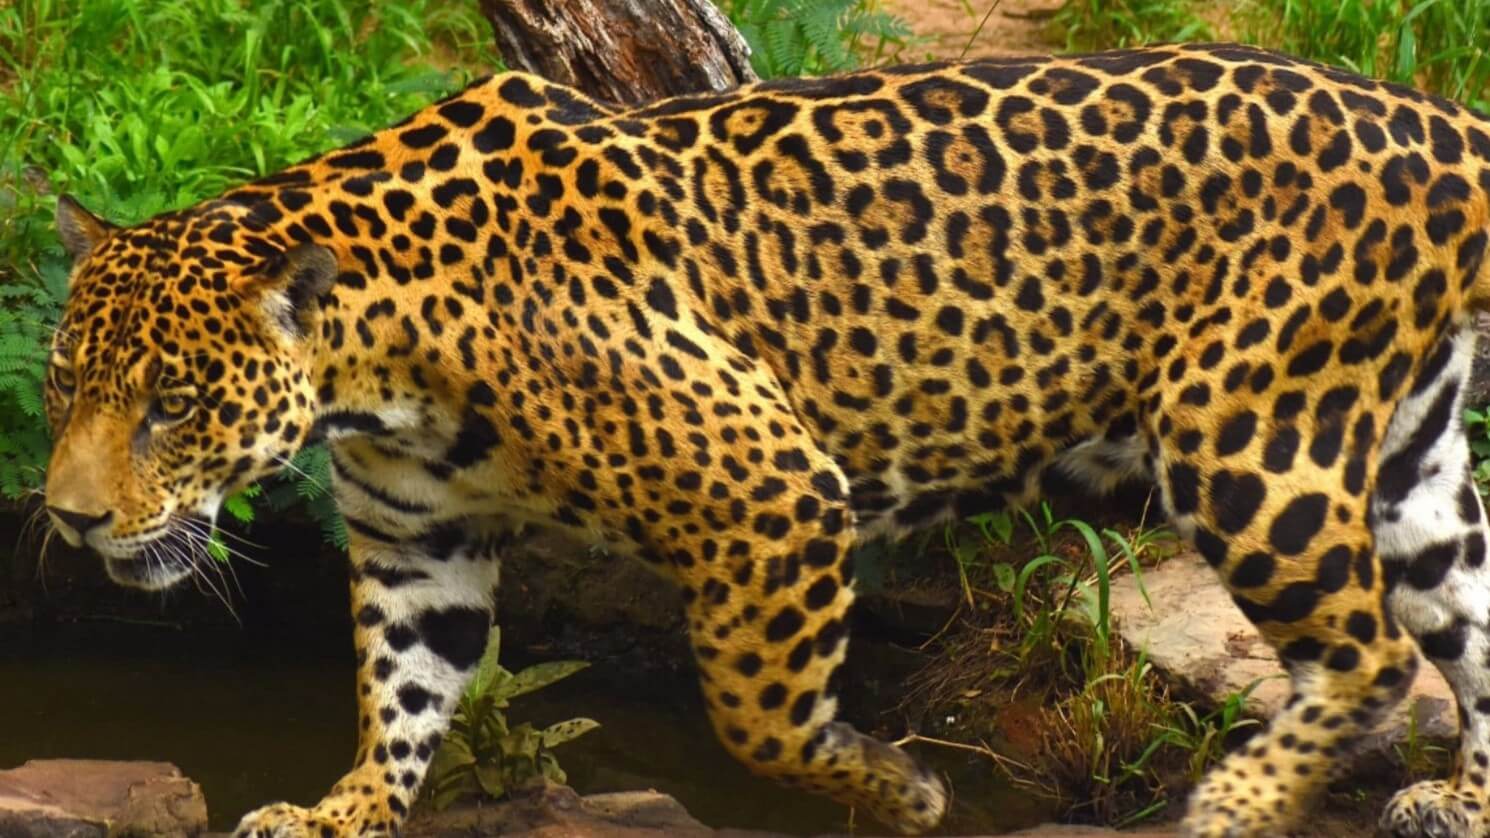 Corantioquia protege al jaguar y busca mitigar conflictos con ganaderos